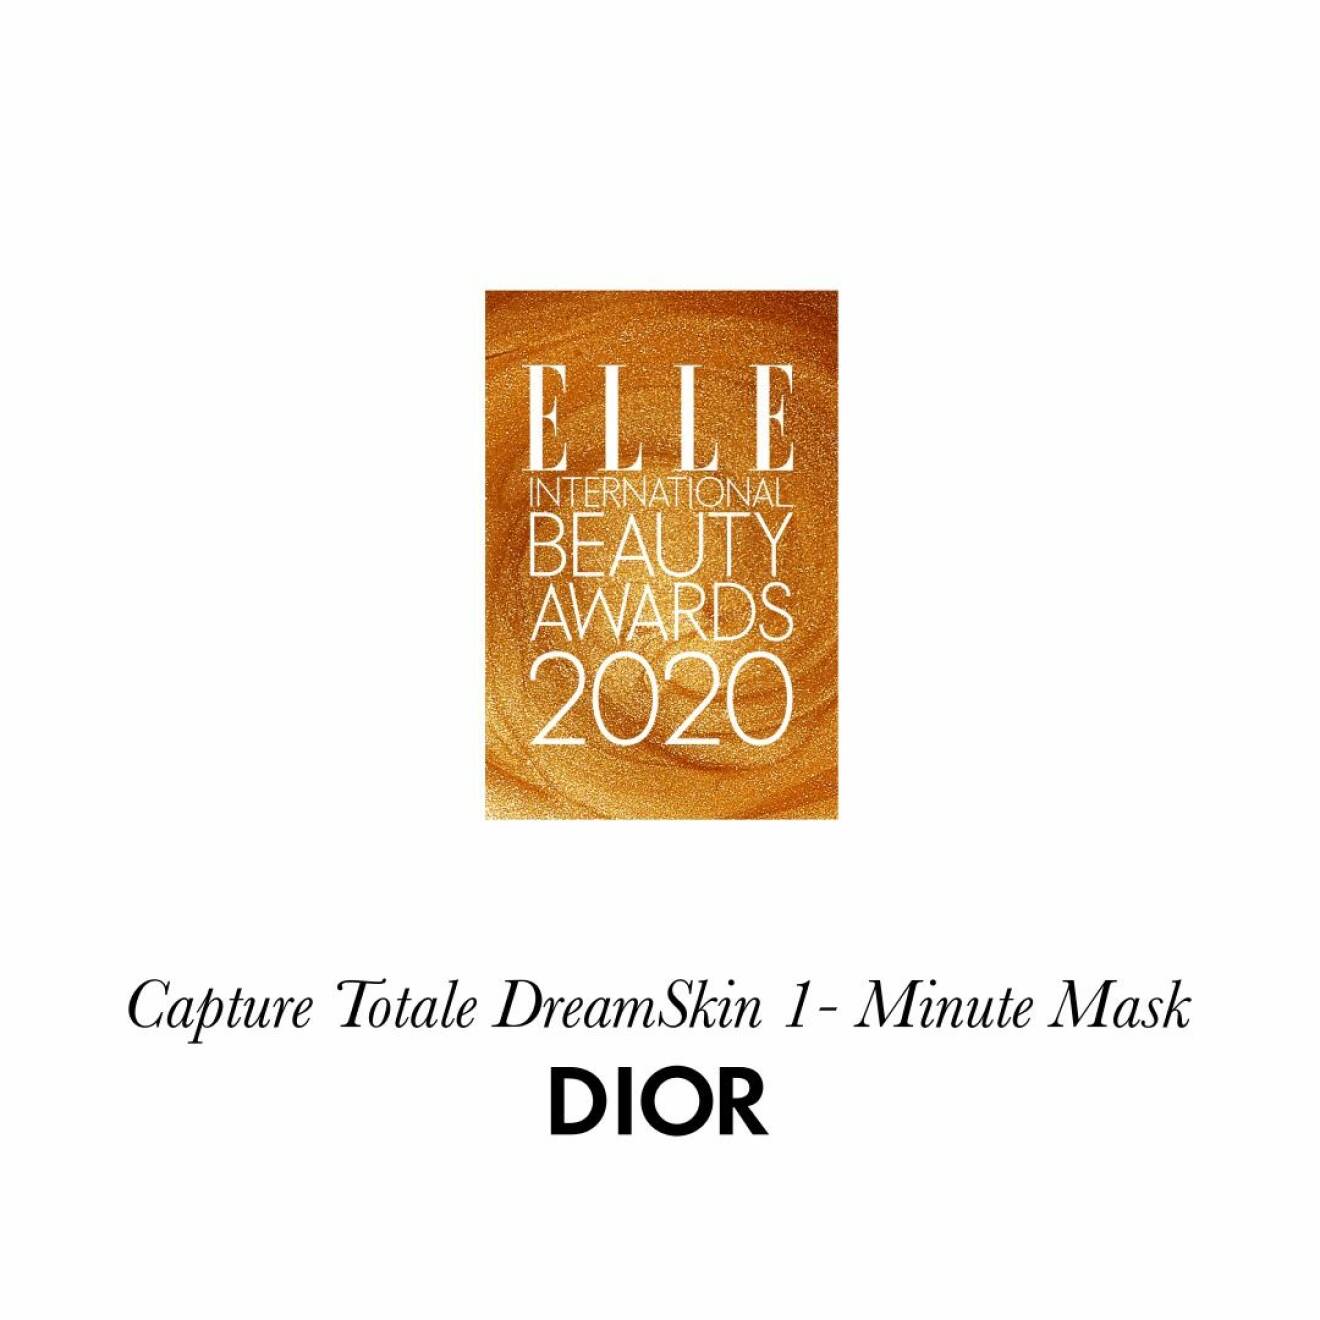 Årets ansiktsmask Capture totale dreamskin 1-minute mask från Dior.